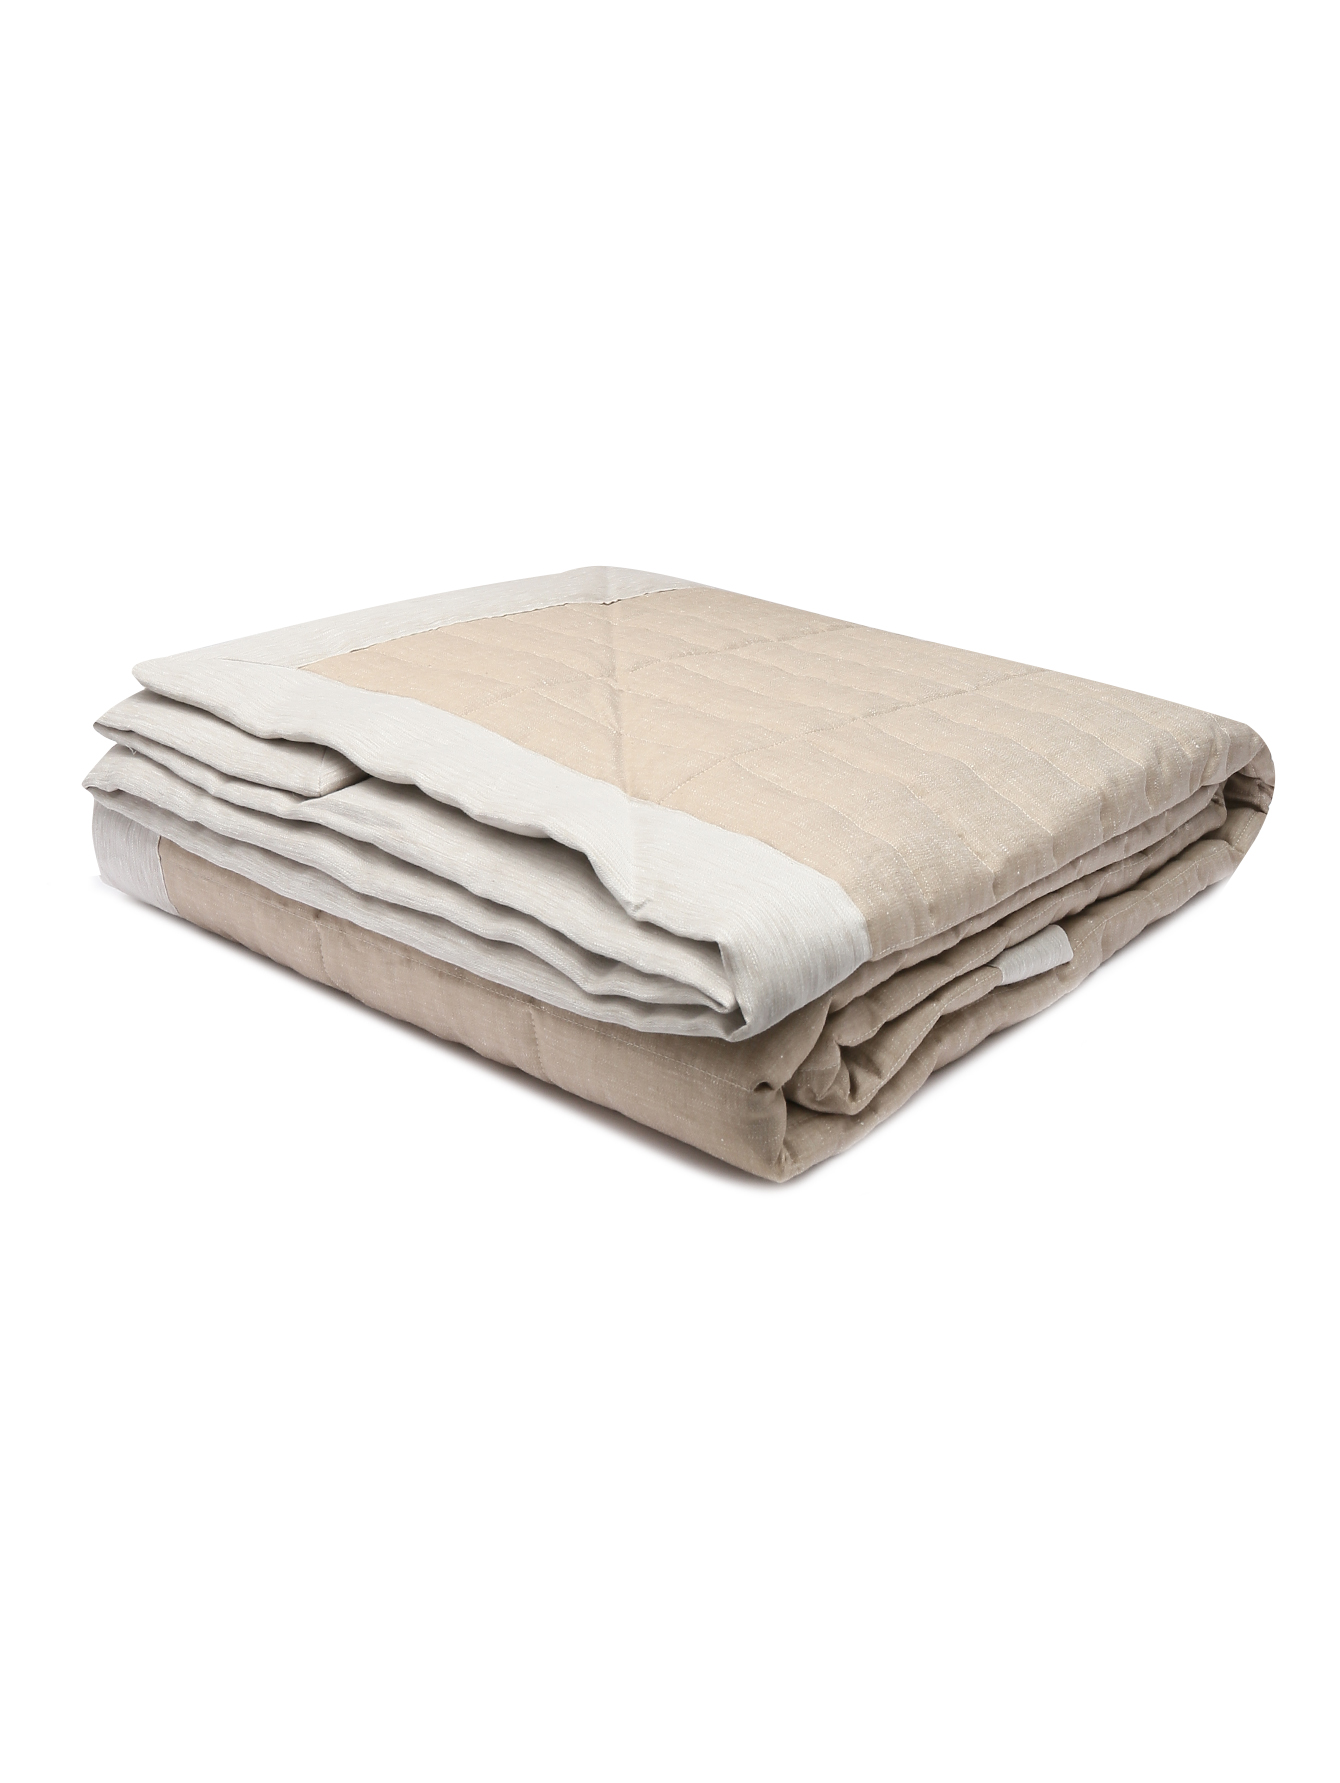 Одеяло легкое из льна - Обтравка1